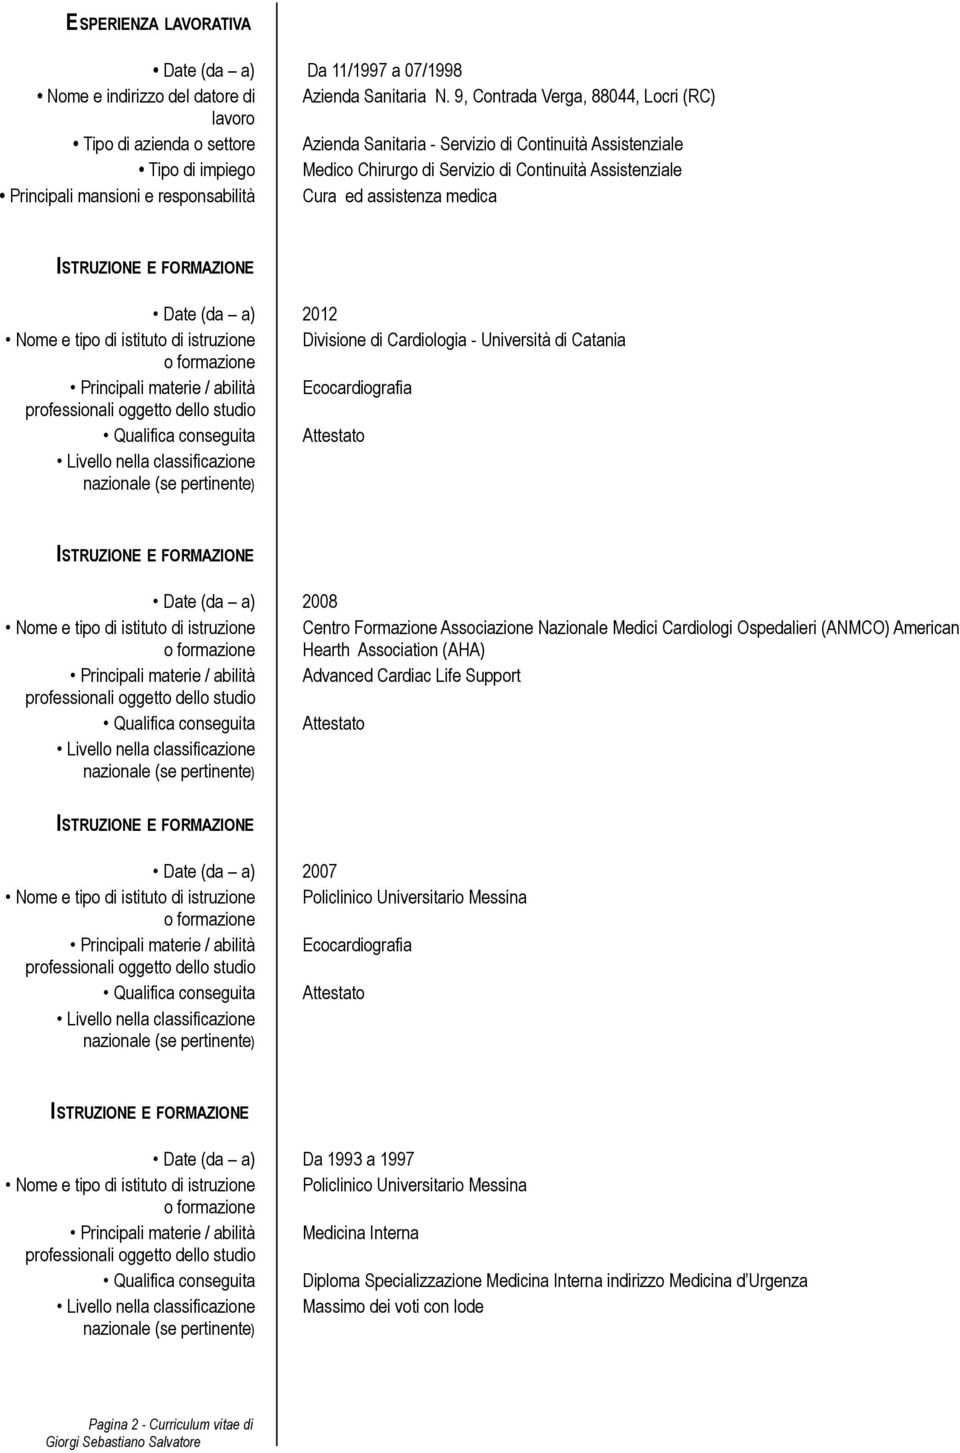 Principali mansioni e responsabilità Cura ed assistenza medica Date (da a) 2012 Nome e tipo di istituto di istruzione Divisione di Cardiologia - Università di Catania Principali materie / abilità